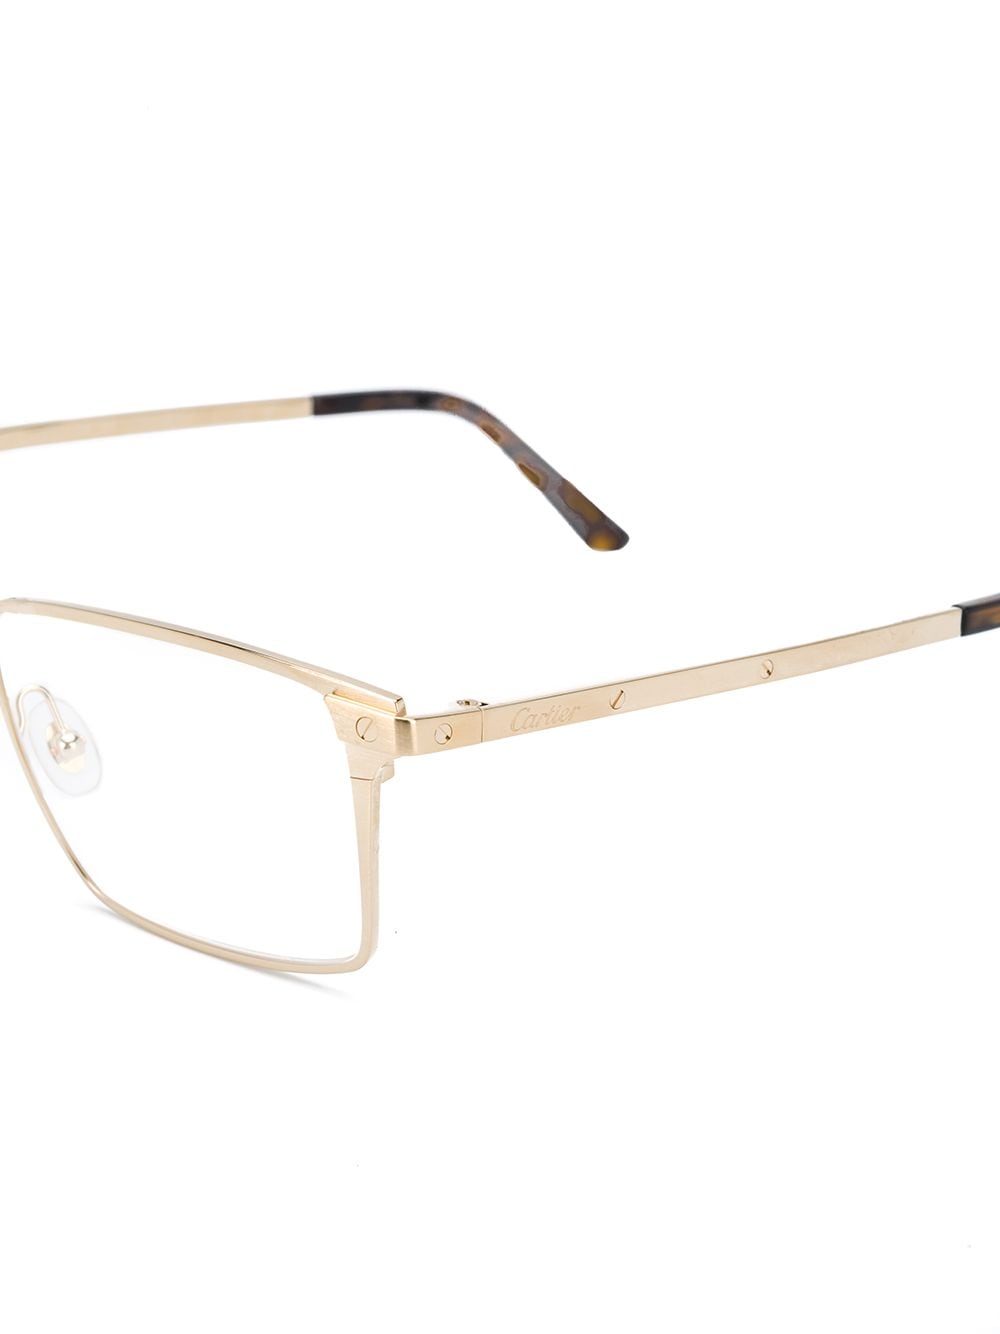 фото Cartier eyewear очки santos в прямоугольной оправе